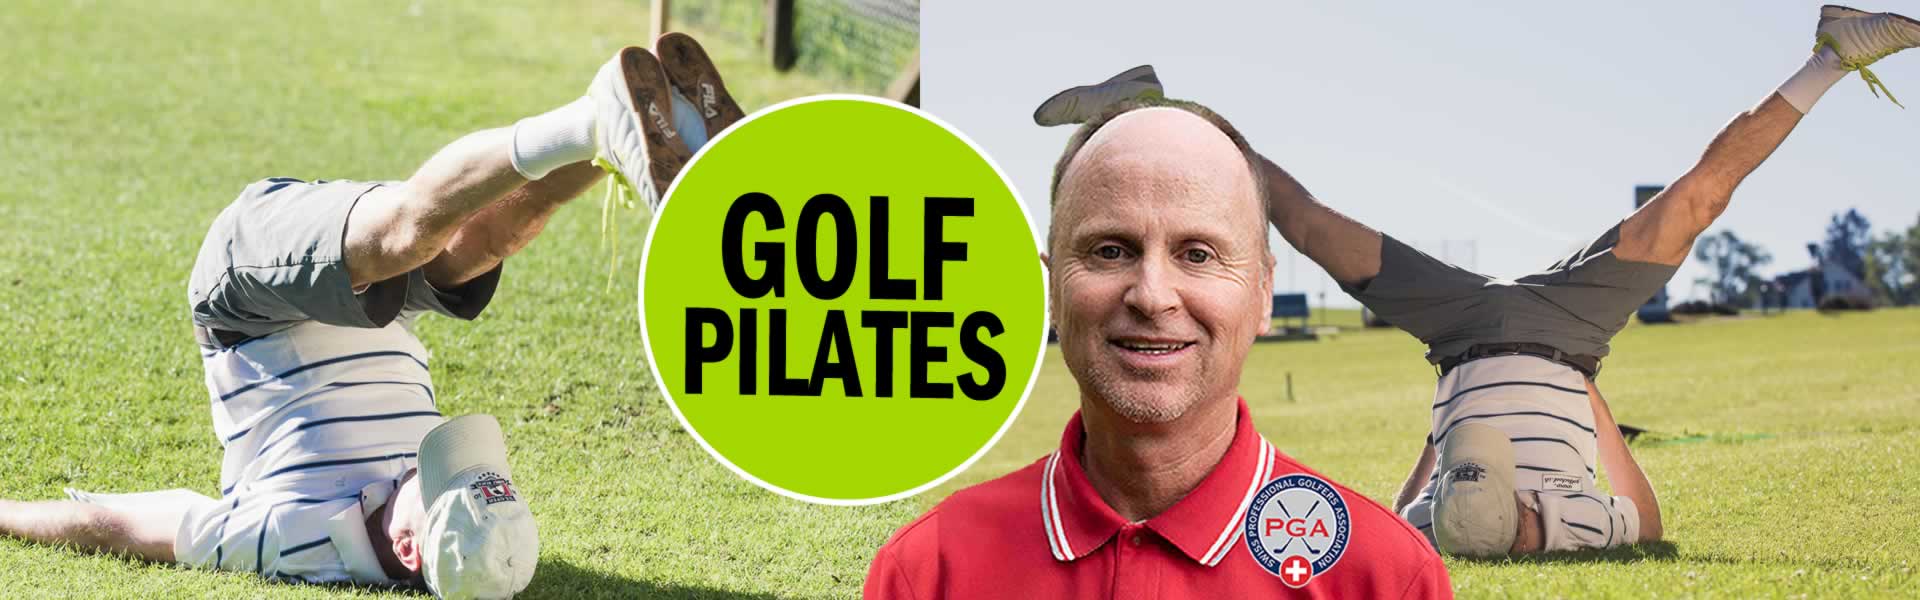 Bilder-Golf-Pilates-Gesundheit-Zuerich-Golf-Pro-Thierry-Rombaldi-02